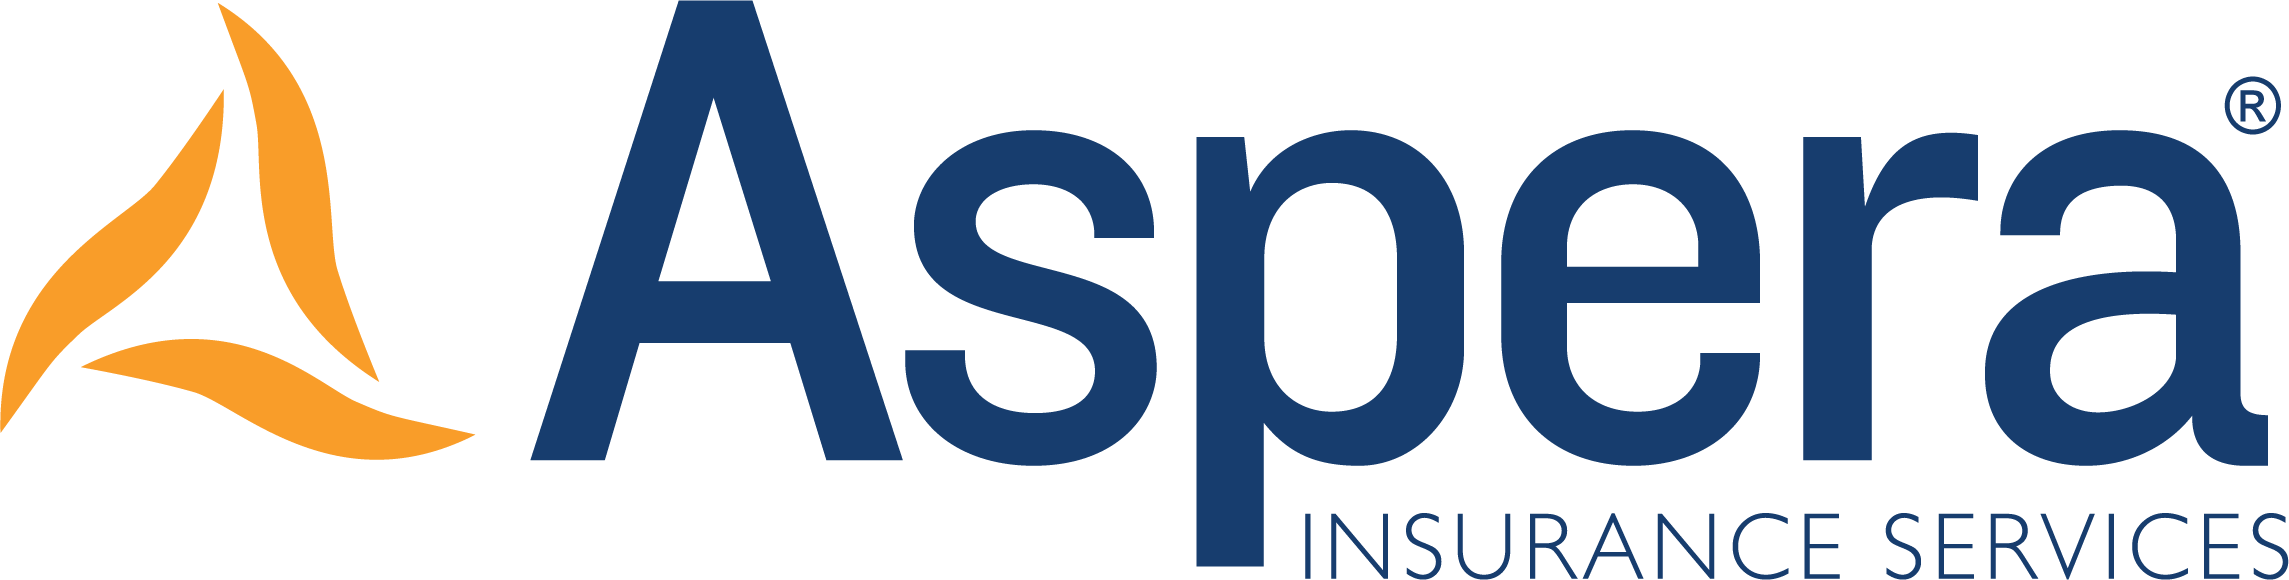 Aspera Insurance Services